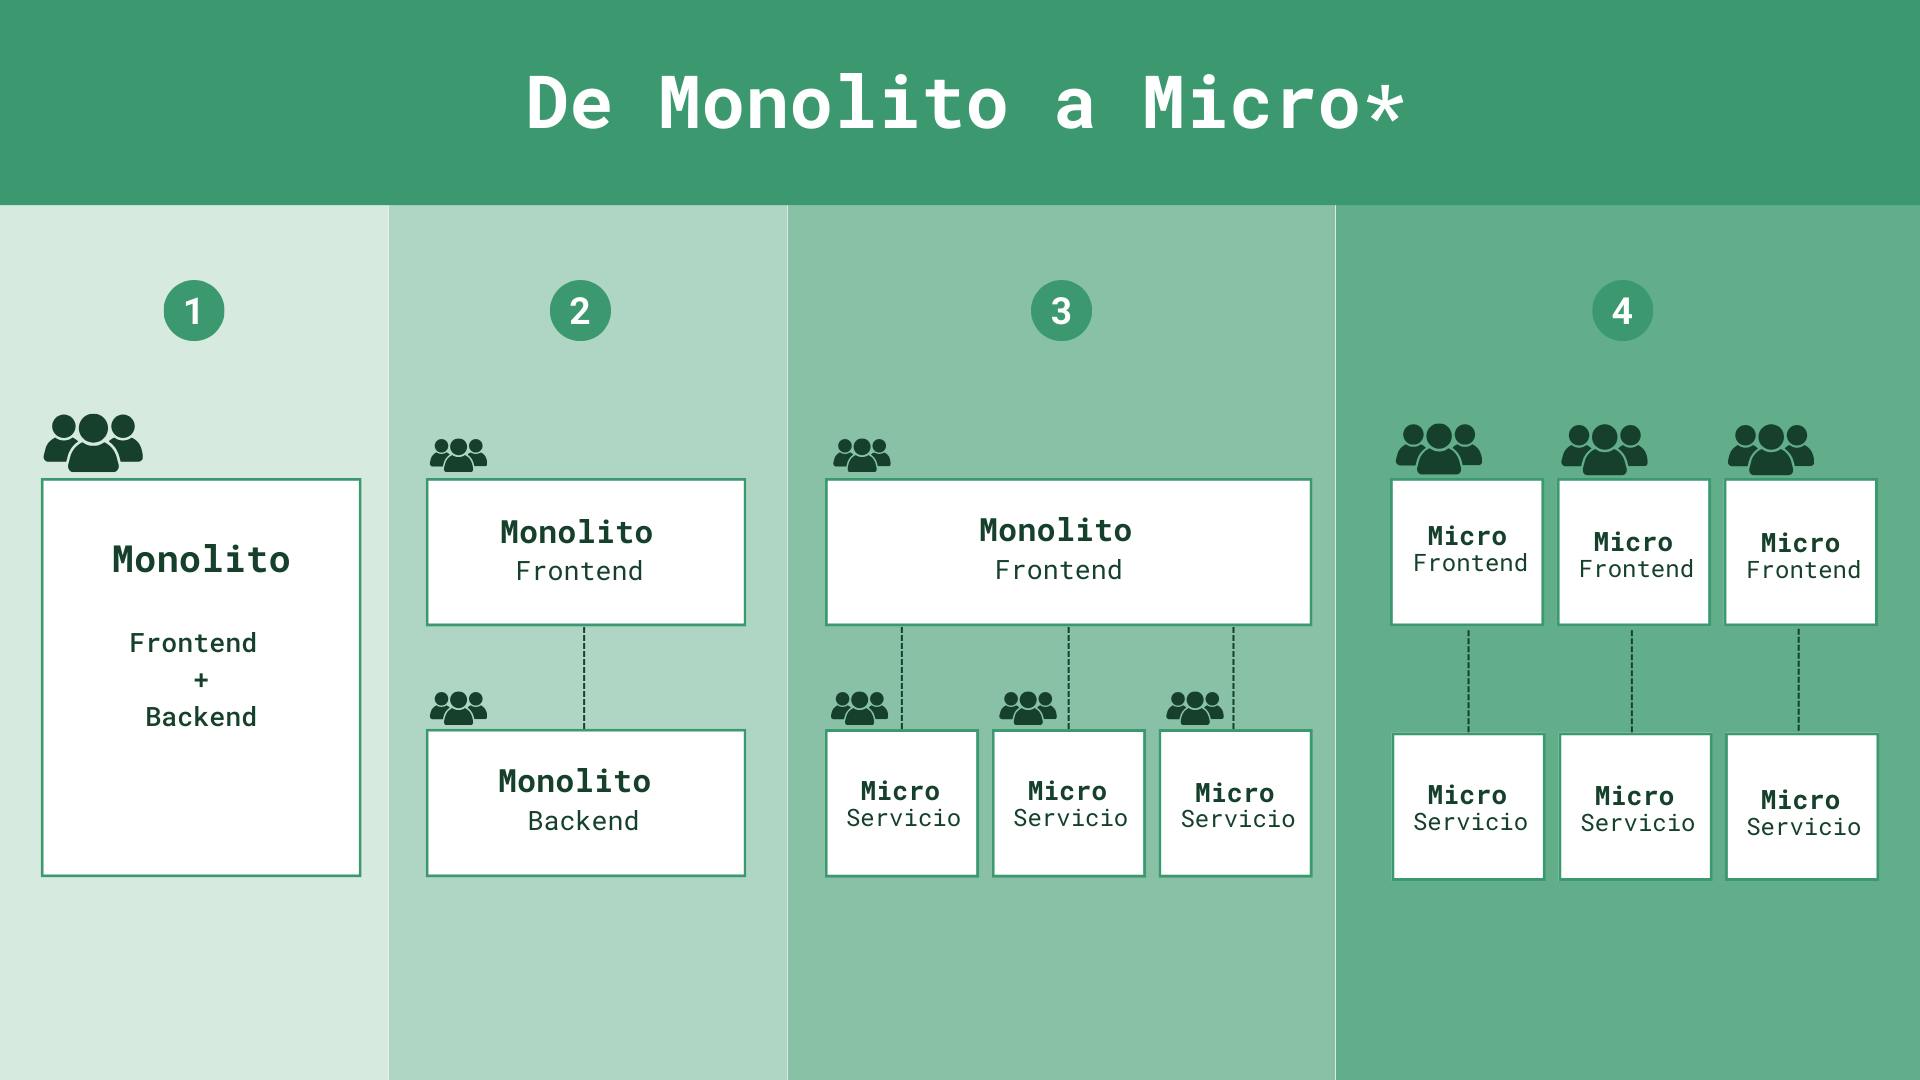 Imagen que muestra diferentes tipos de arquitectura: Monolito, Monolito de front y Monolito de back, Monolito de front y micro servicios en back, Micro frontends y Micro servicios 